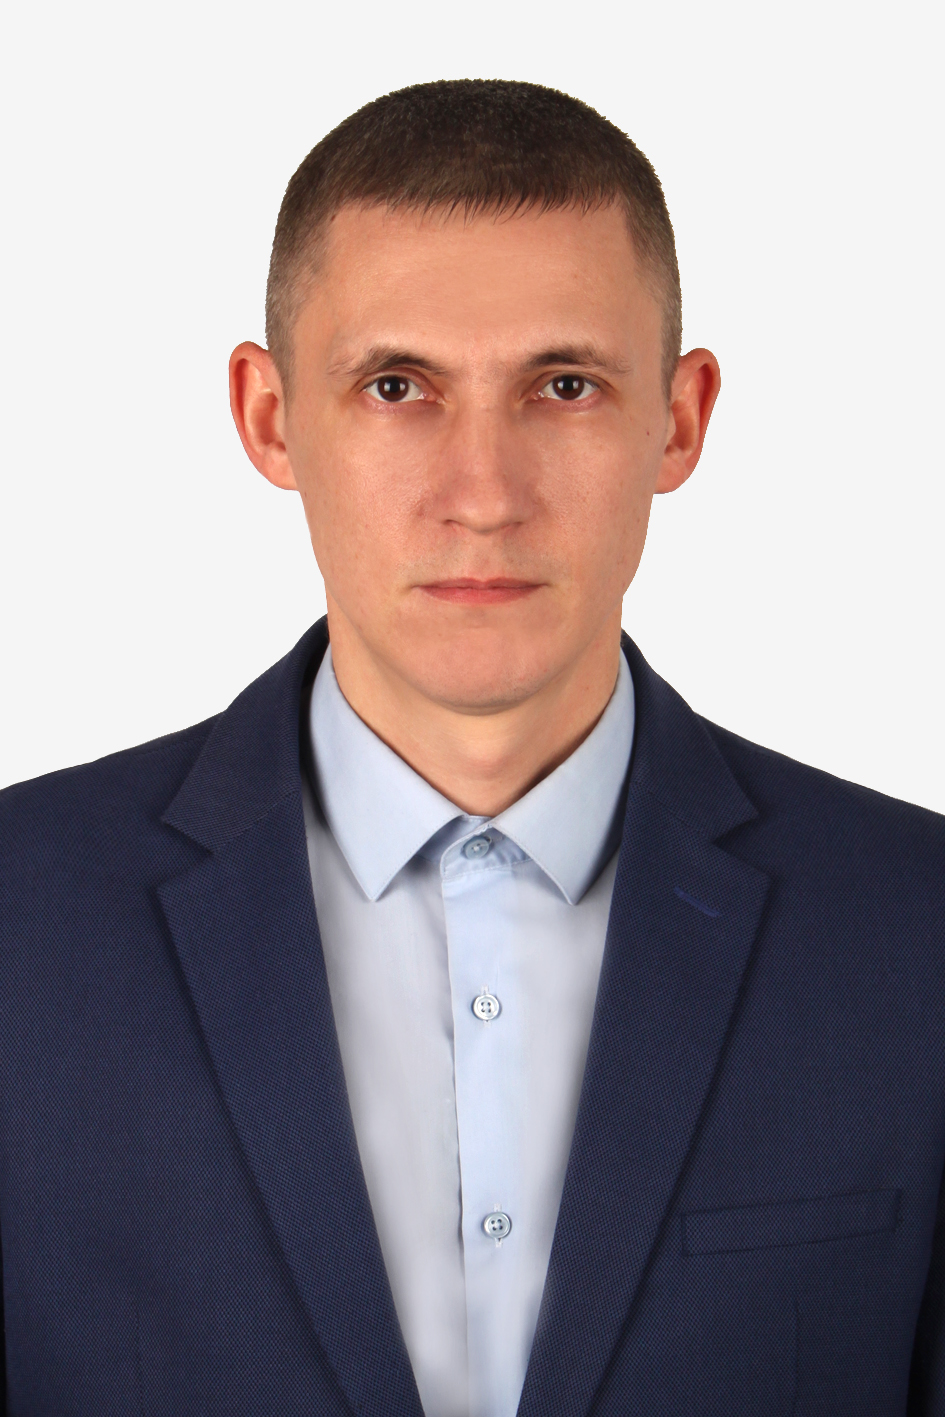 Руководителем Управления Росреестра по Белгородской области назначен Александр Сергеевич Масич